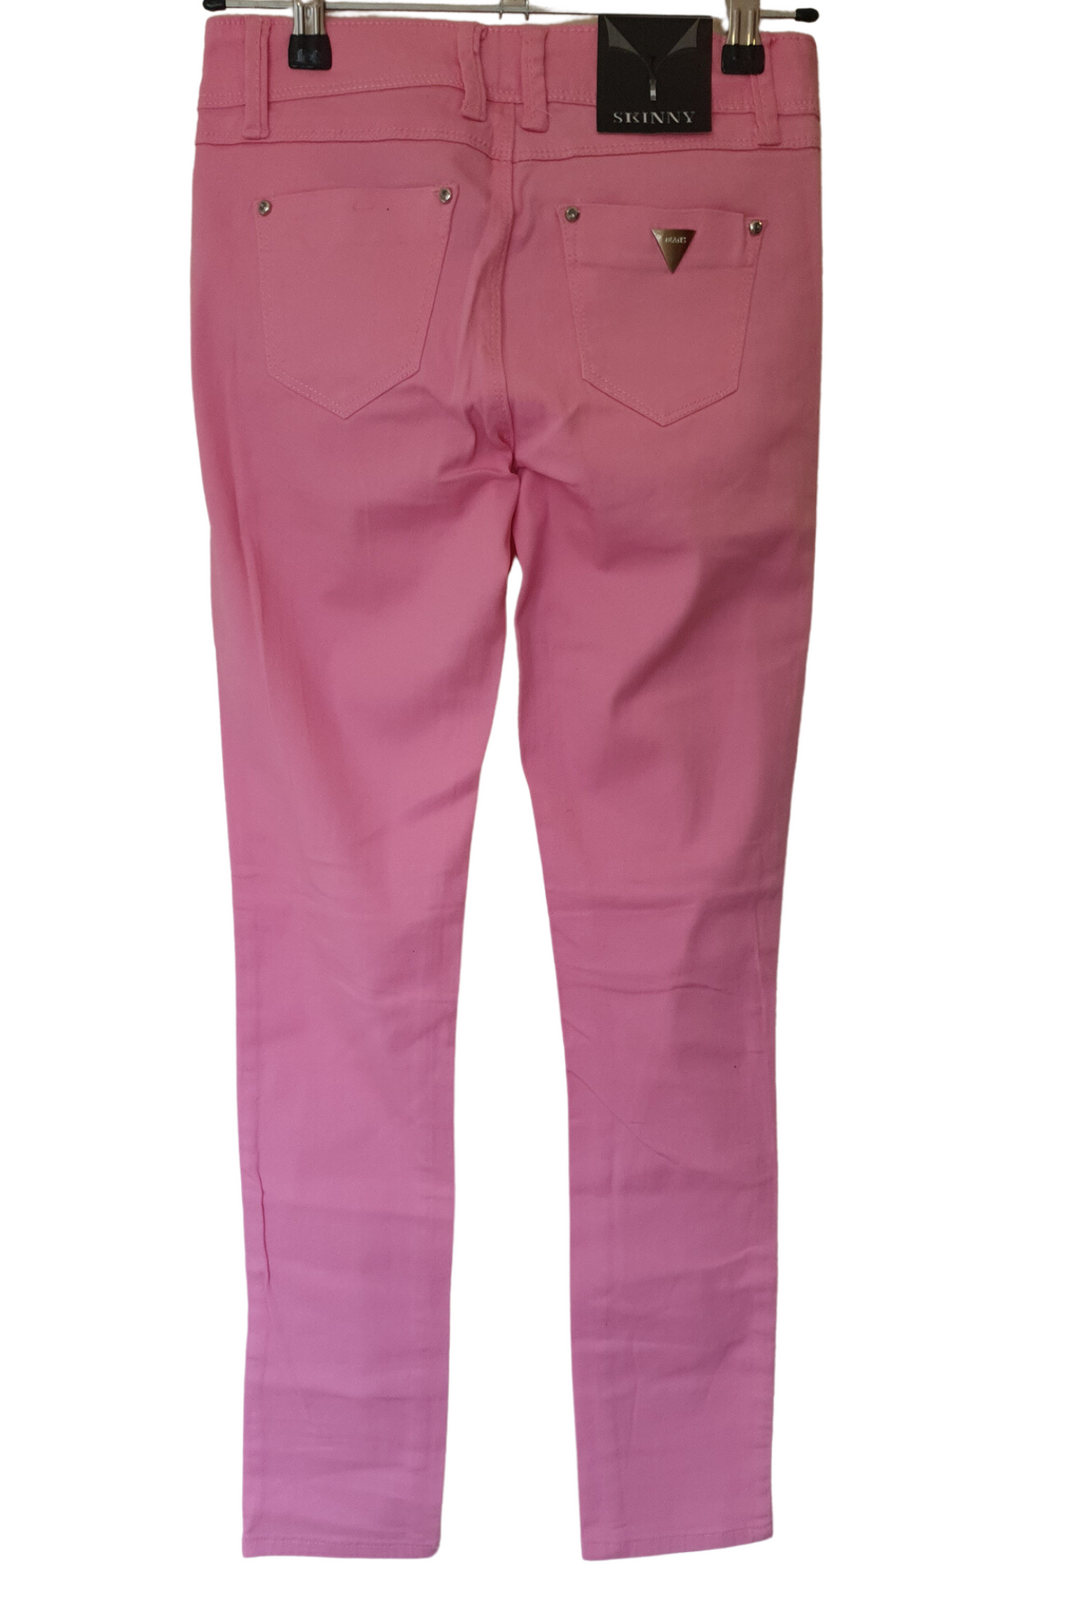 I.Q Dusk Pink Jean